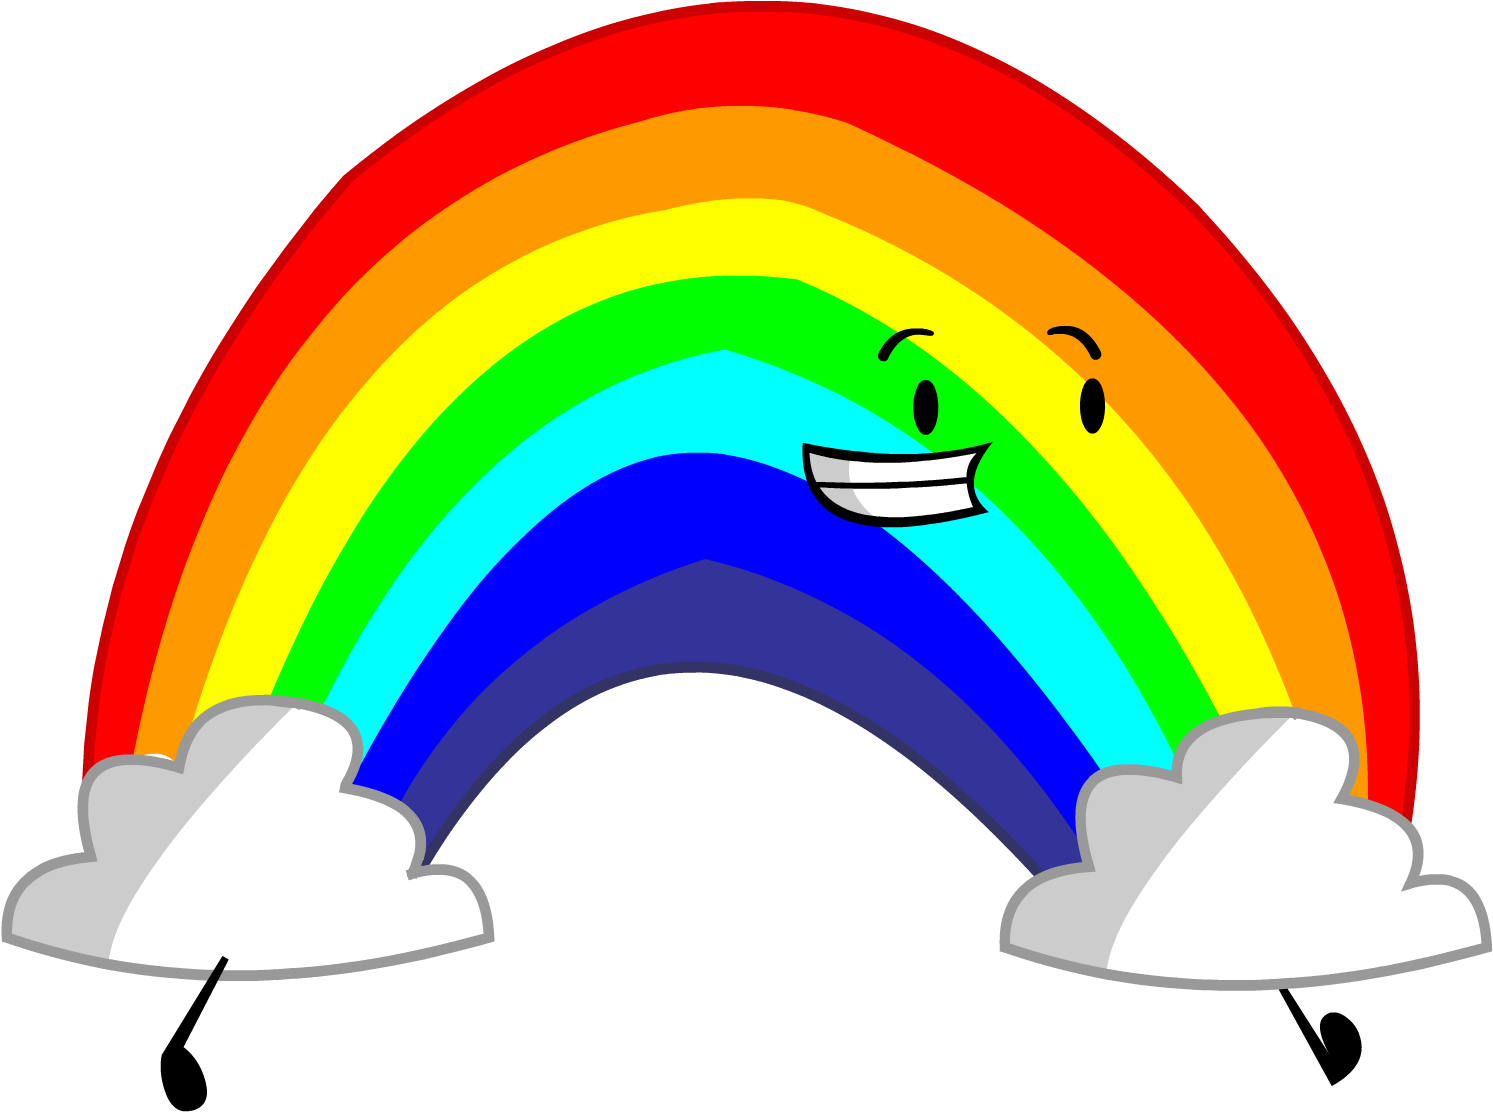 Rainbow - Object Shows Rainbow (1494x1120)